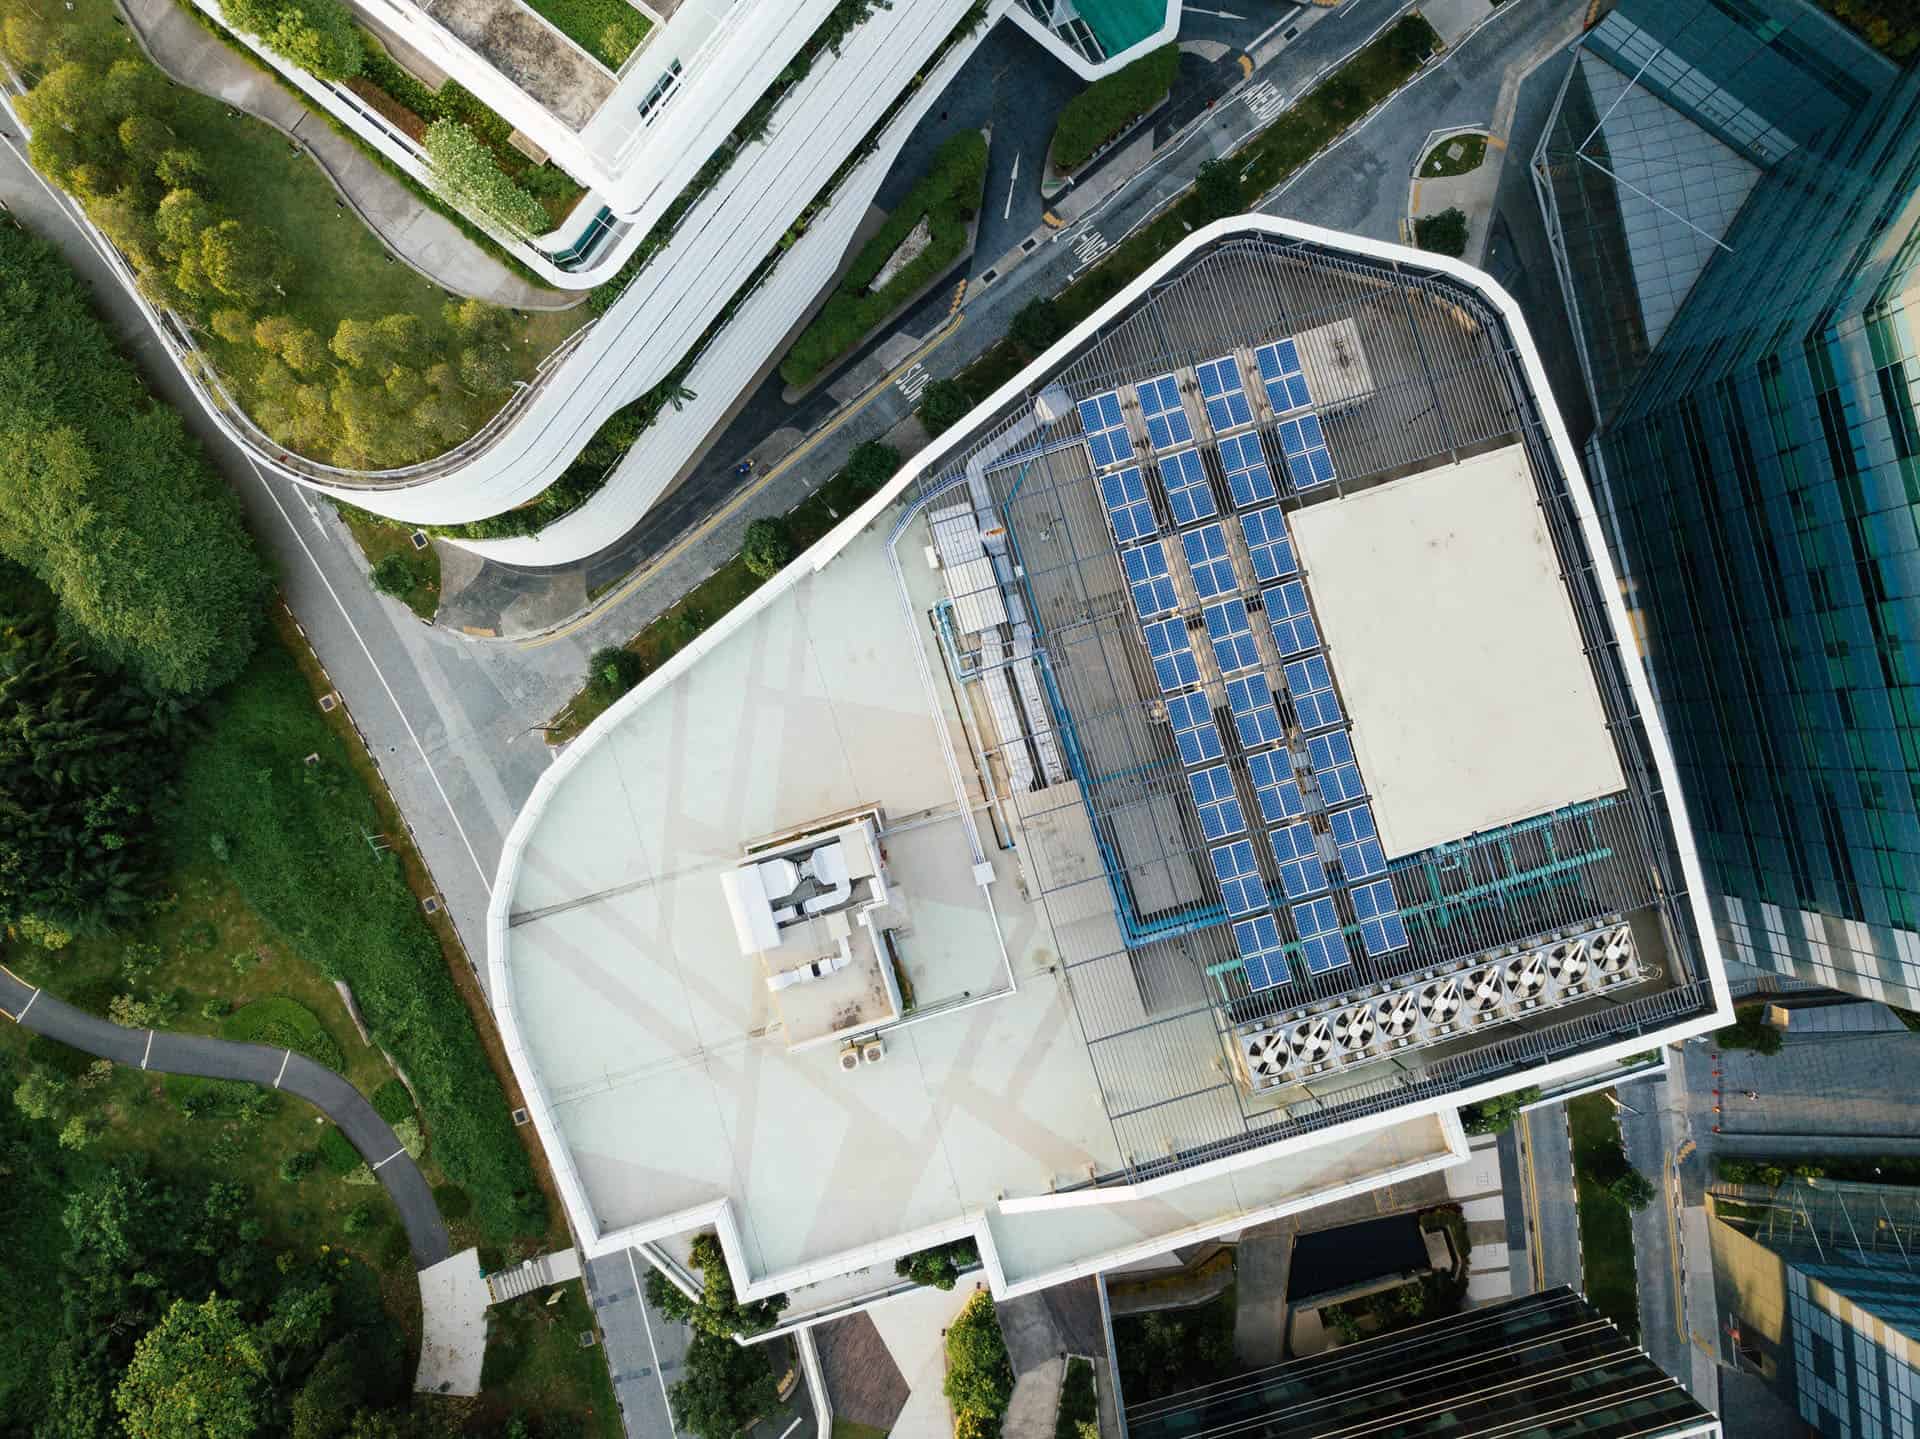 Vue aérienne du toit d'un immeuble sur lequel se trouvent des panneaux photovoltaïques